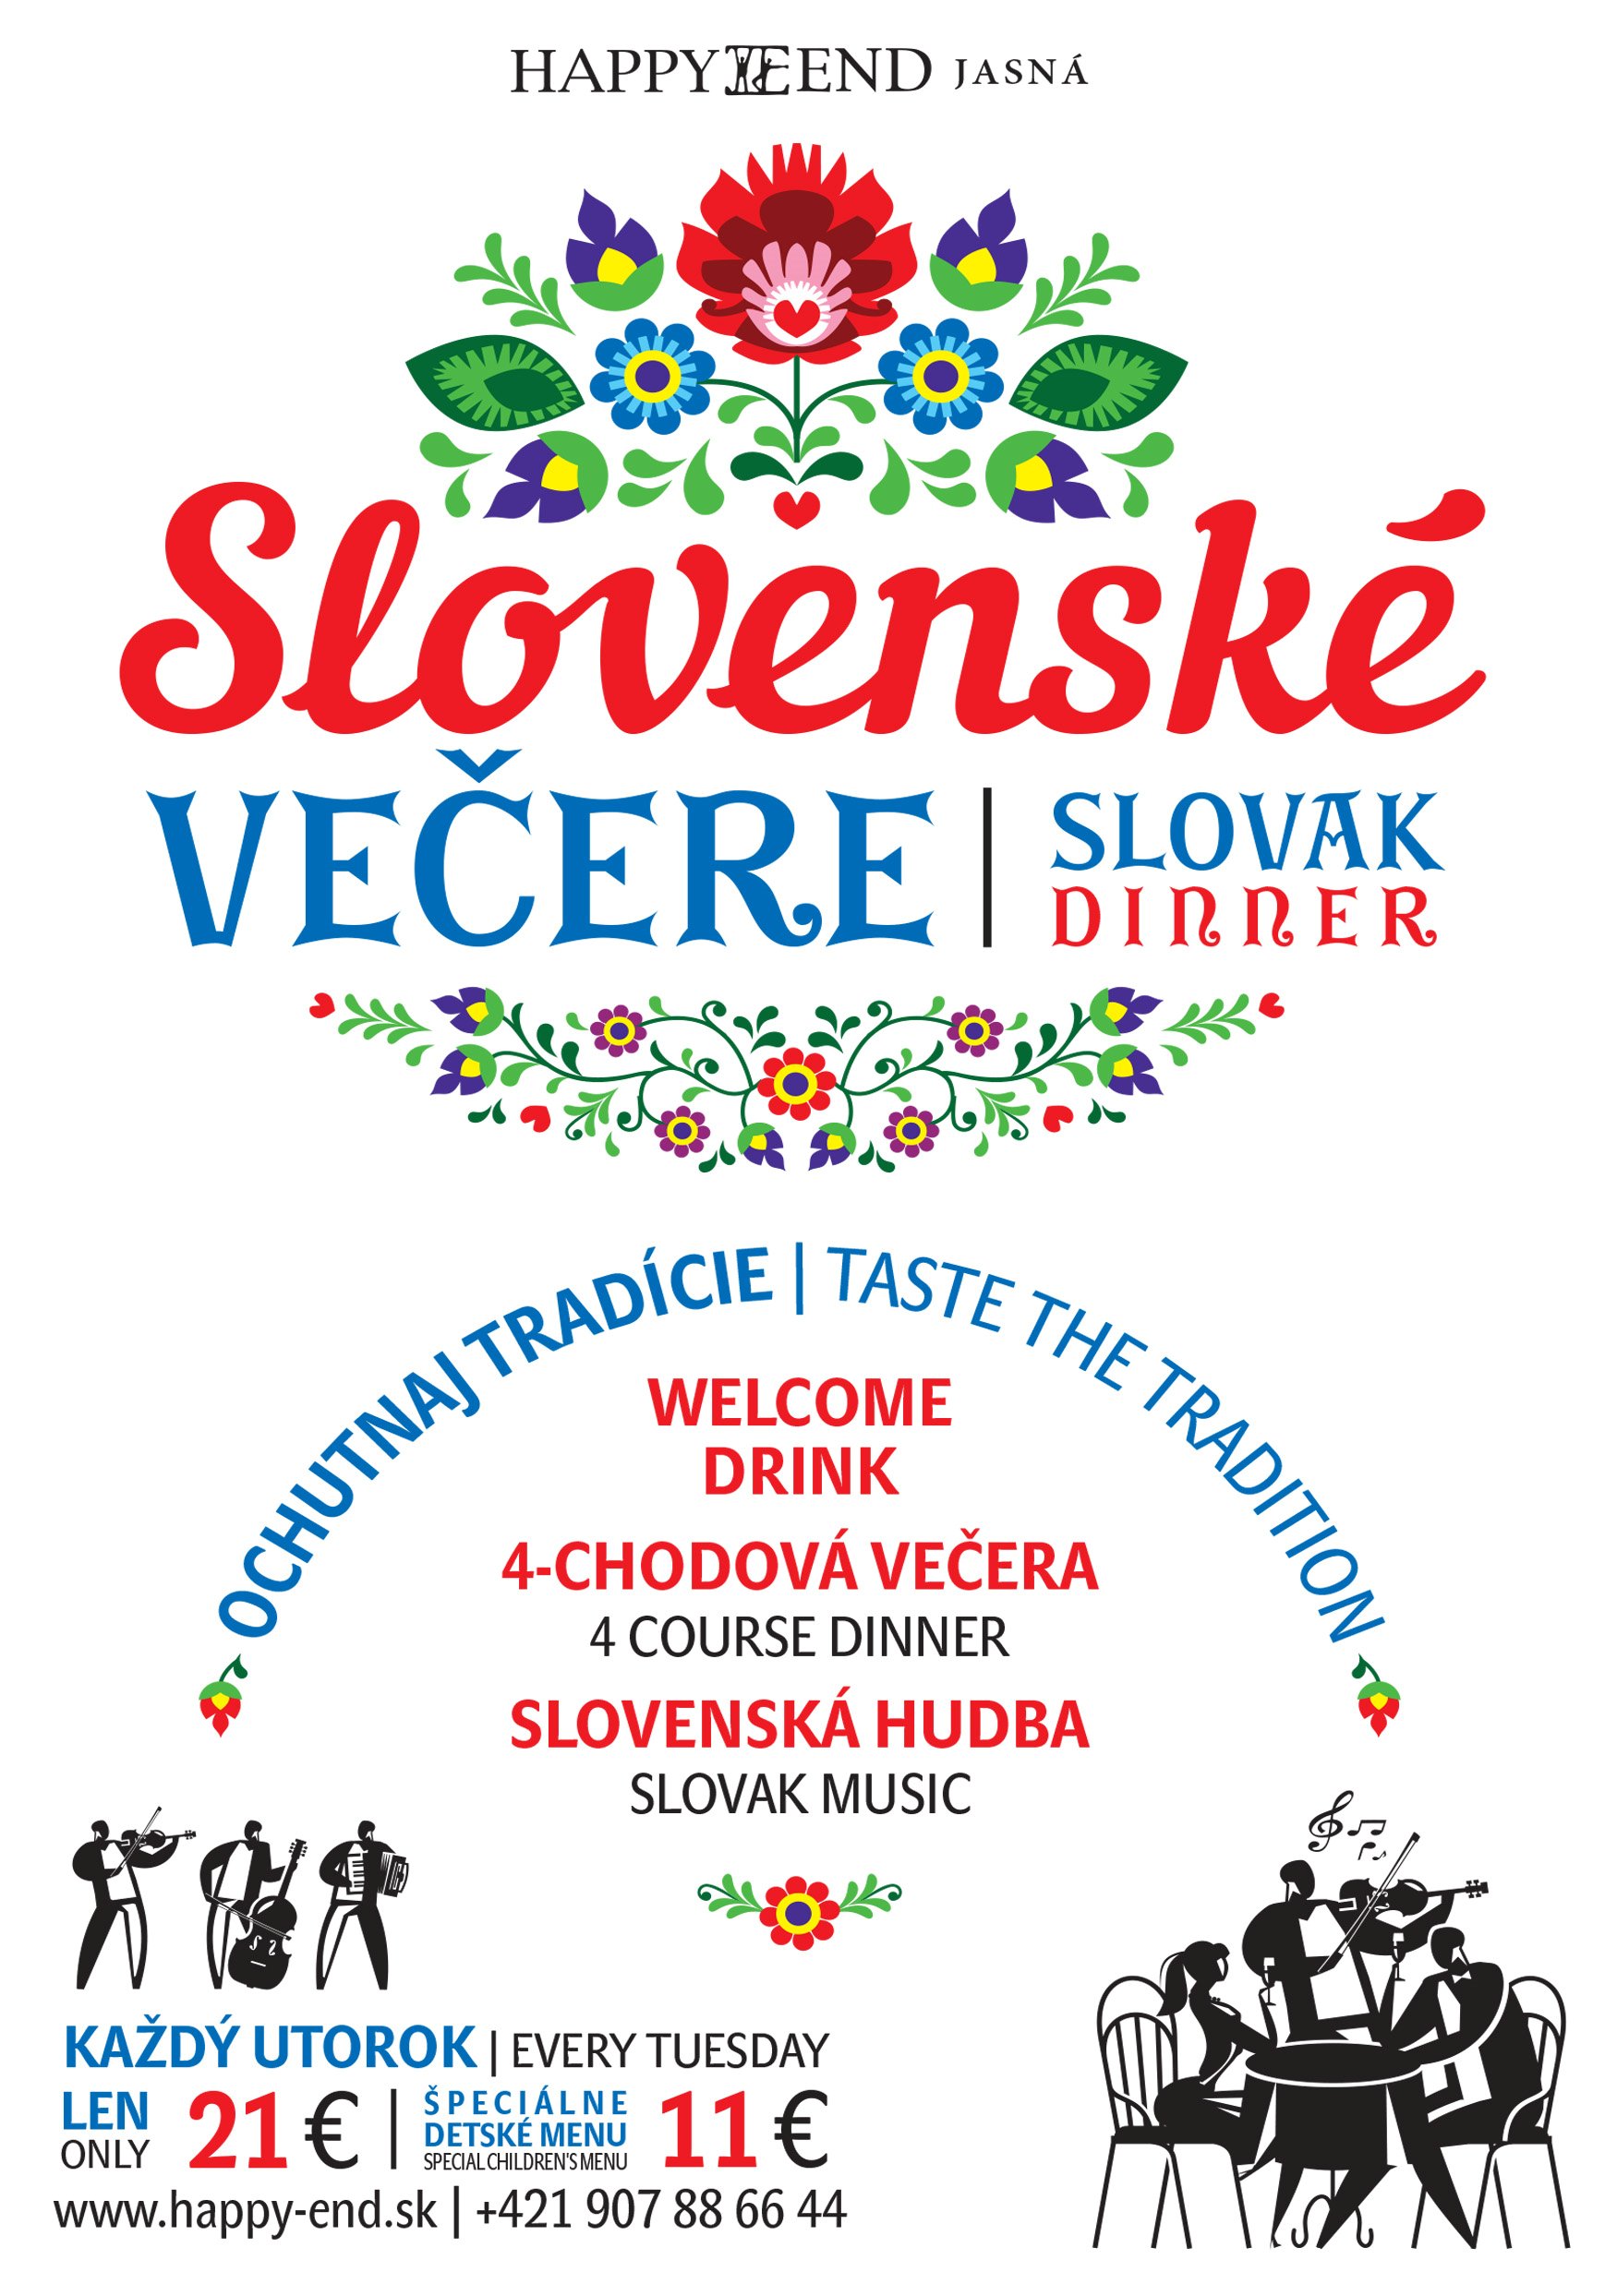 A5_slovenska_vecera